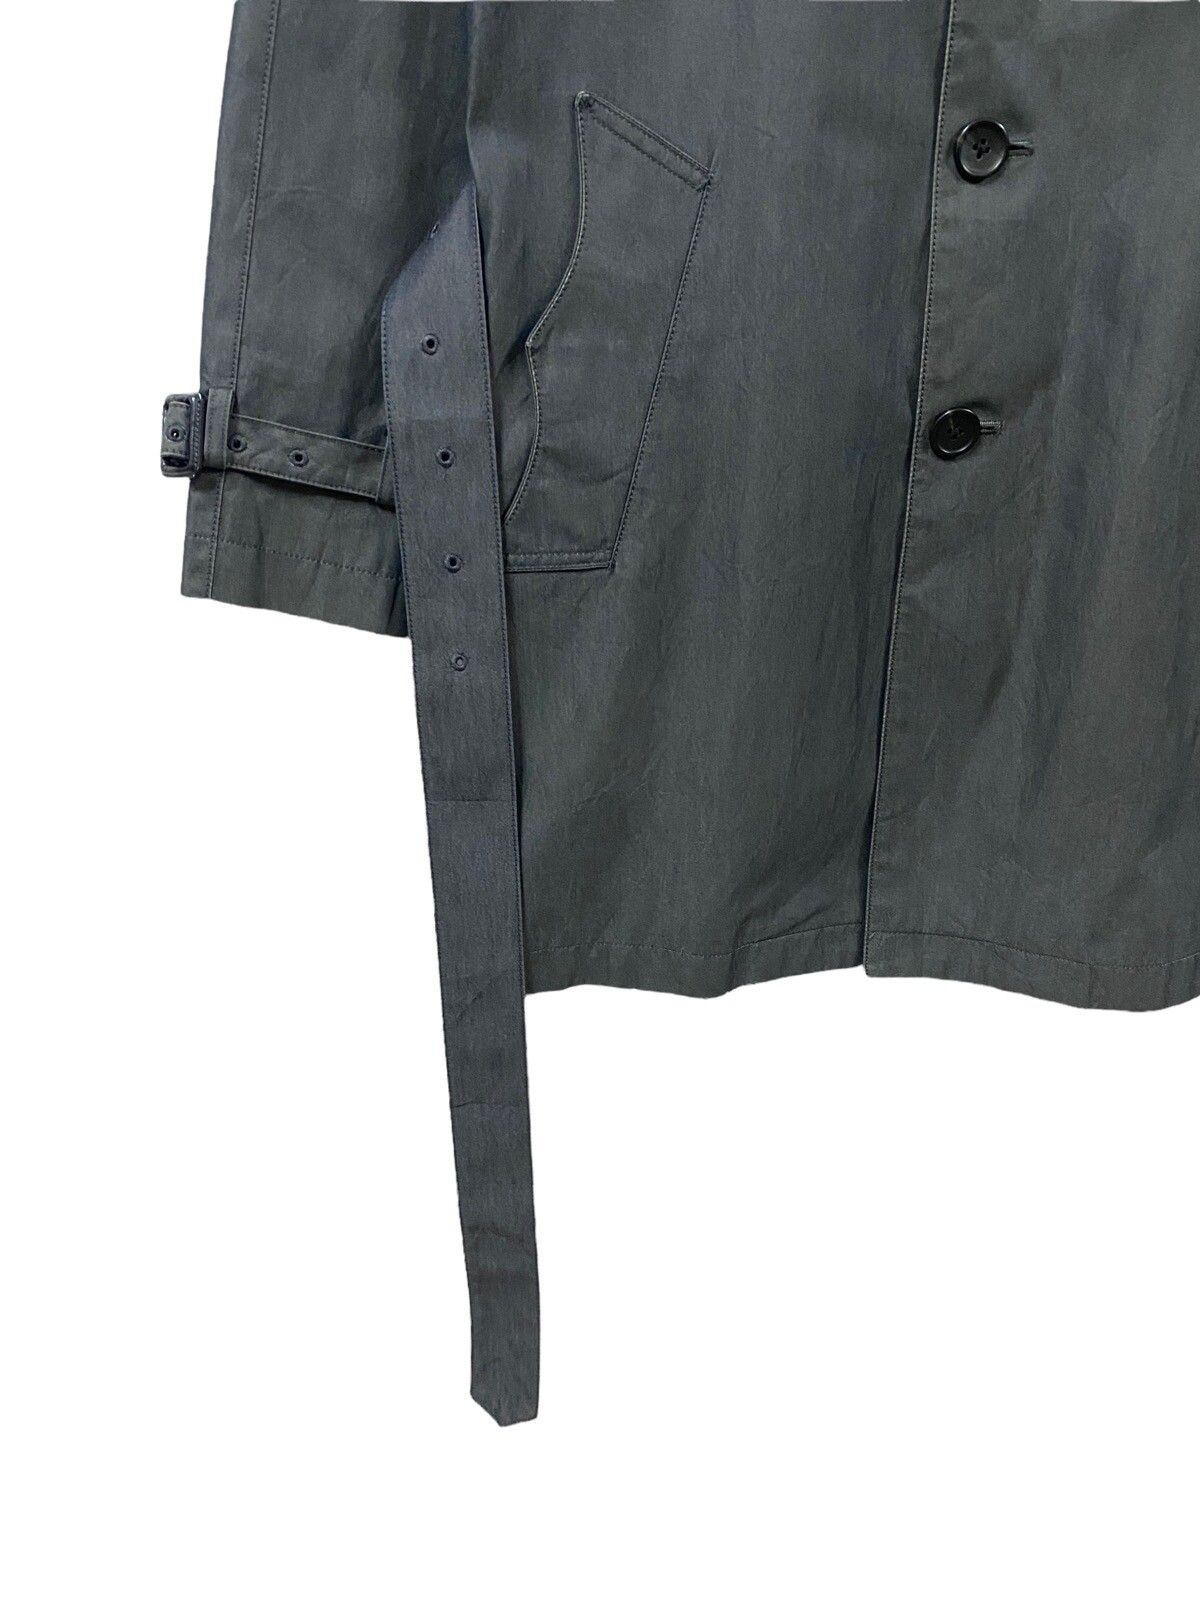 PS Paul Smith Trech Coat Grey Jacket - 7